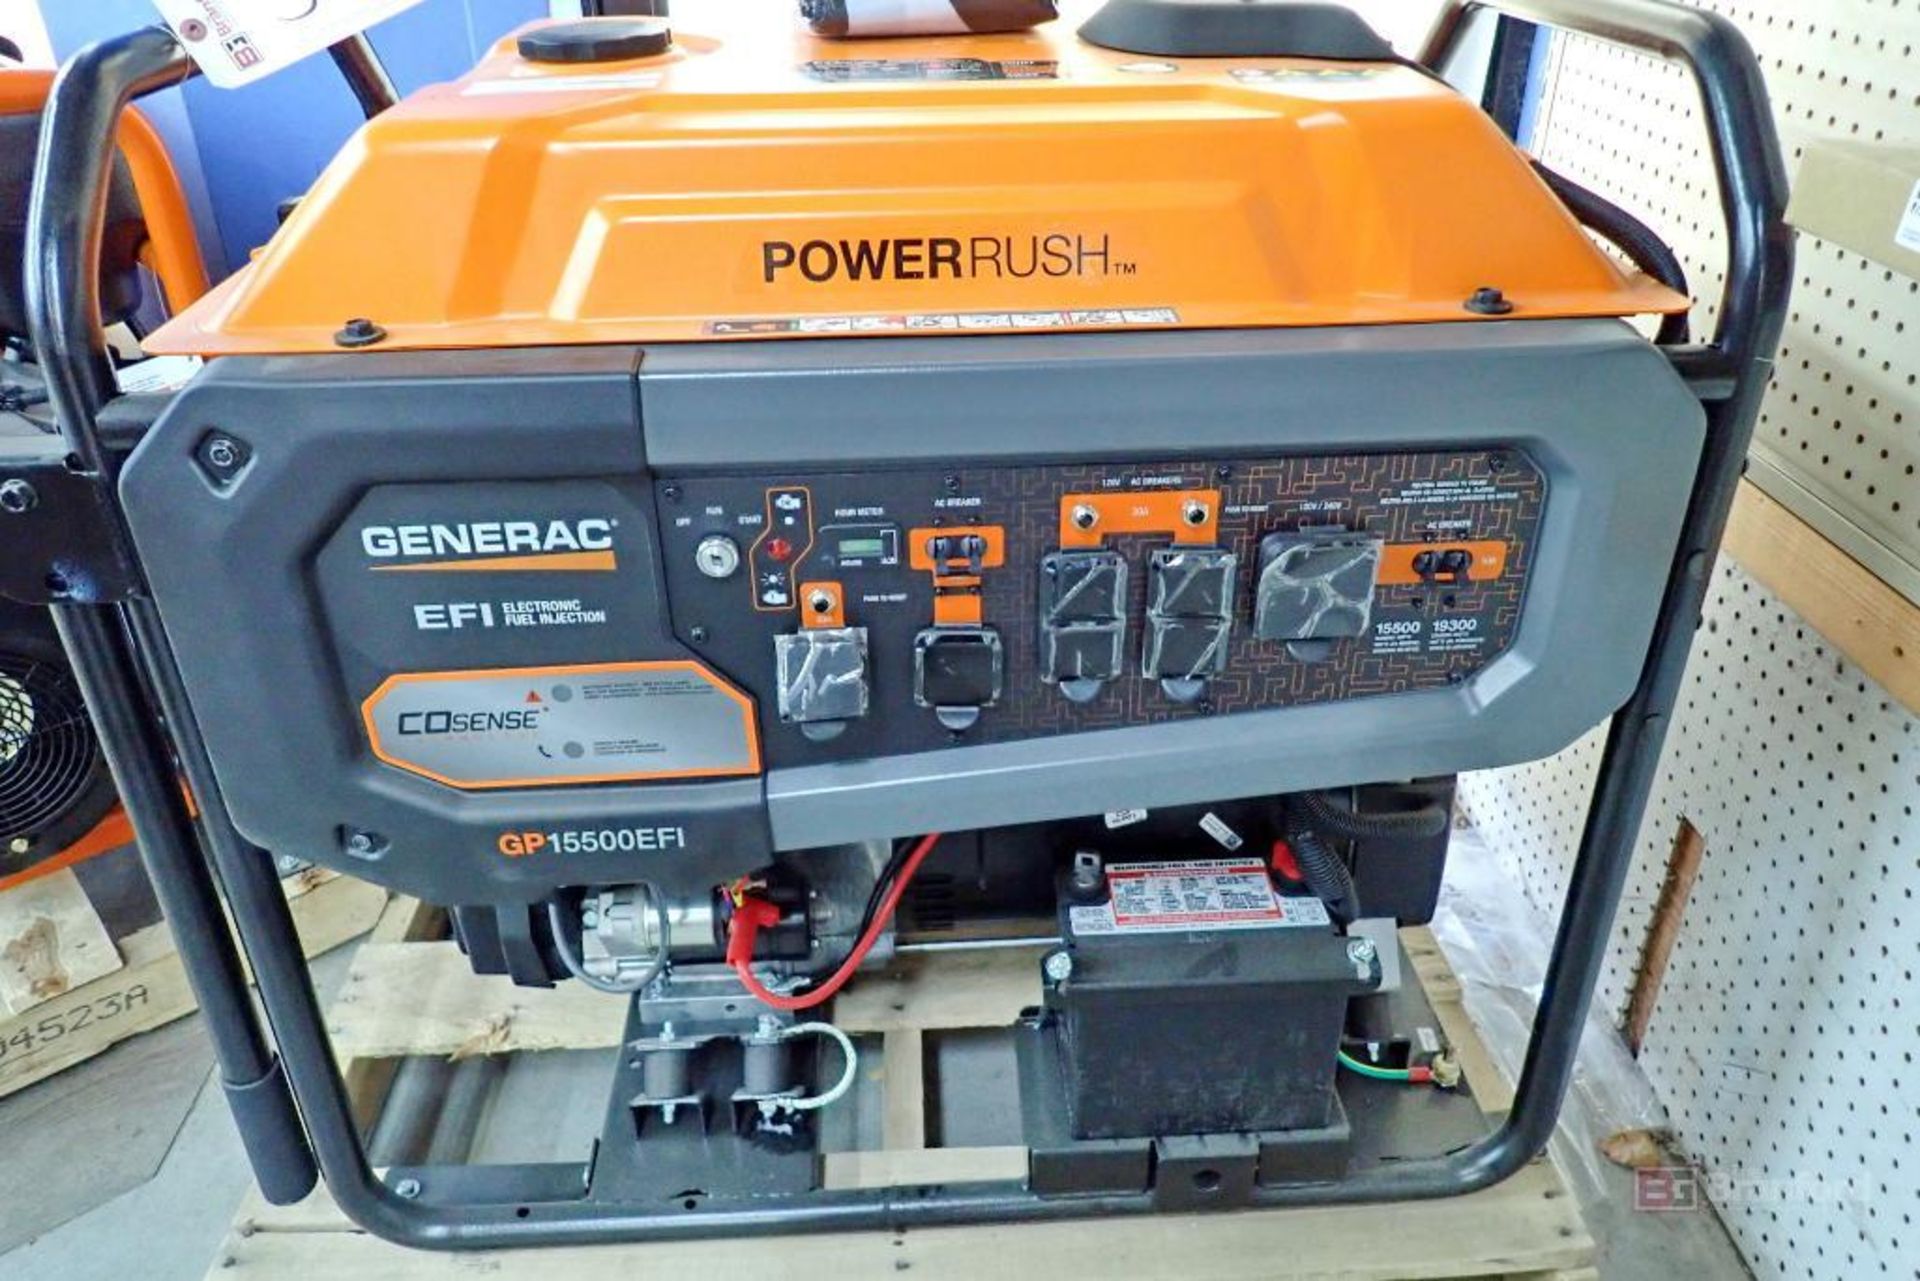 GENERAC Power Rush GP15500EFI Gas Powered Generator - Bild 2 aus 11